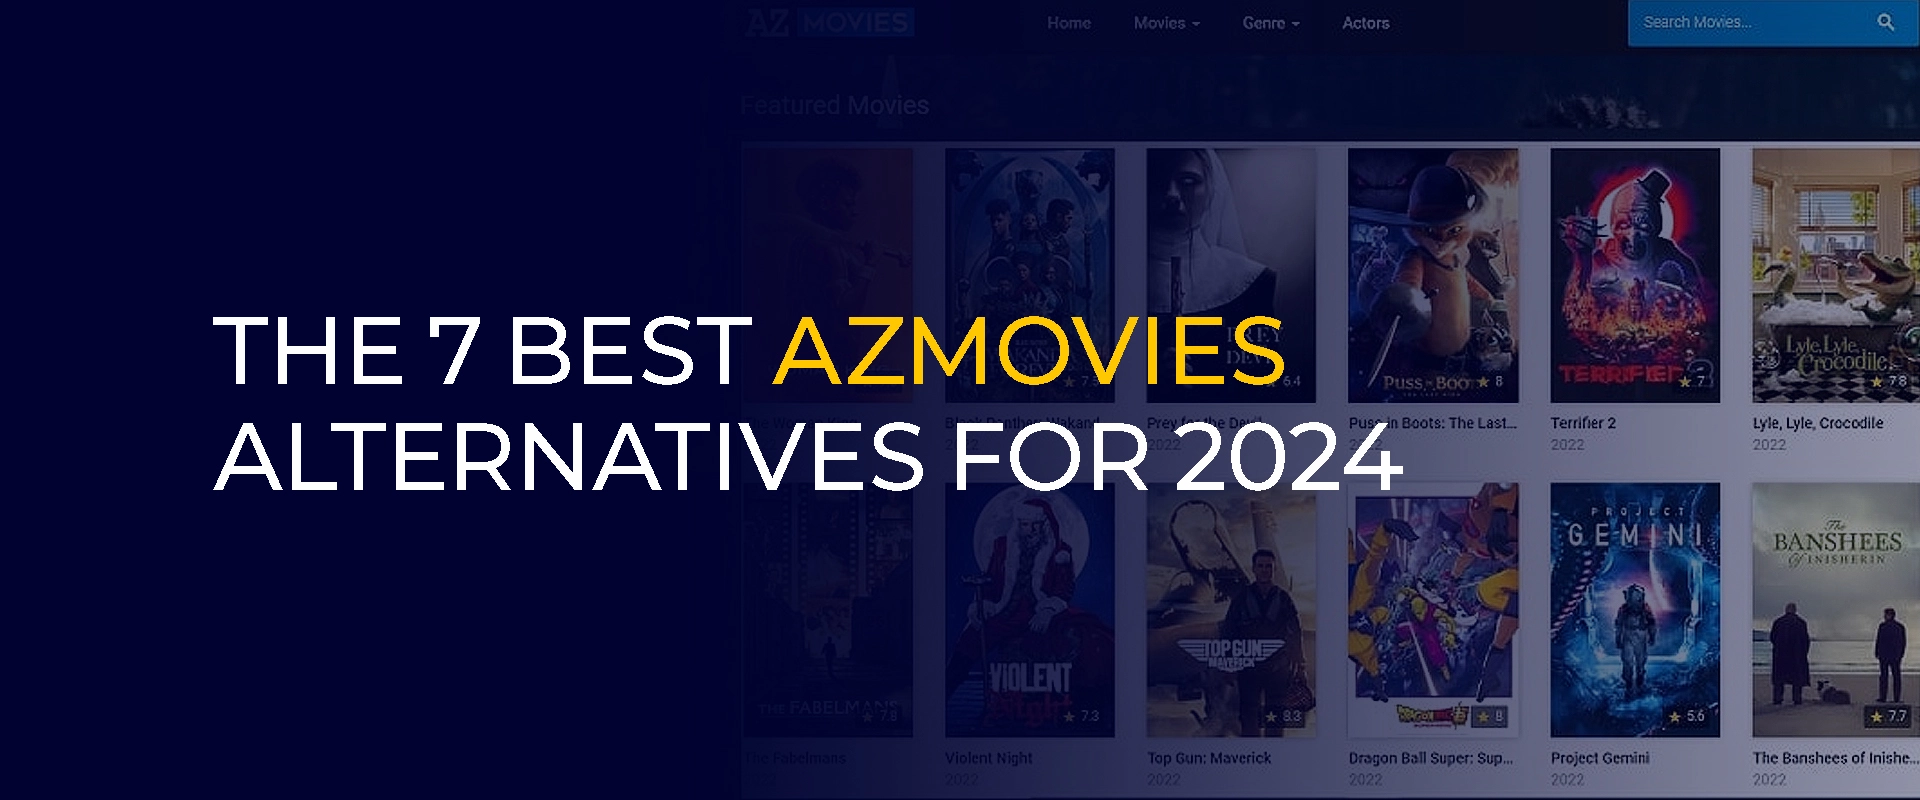 Las 7 mejores alternativas de Azmovies para 2024